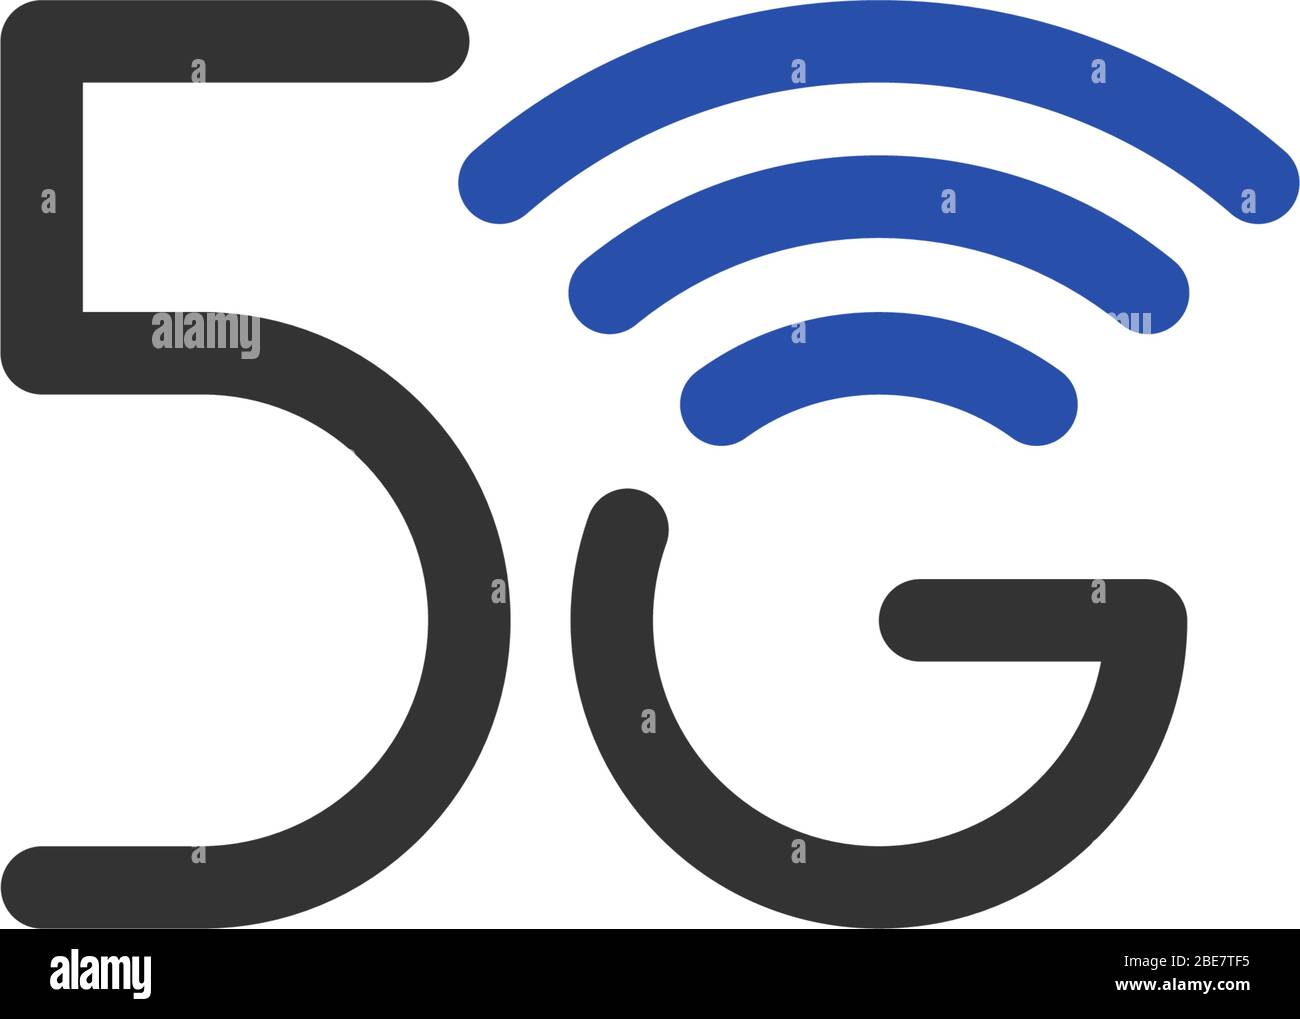 Symbole professionnel de connexion réseau 5 G. icône de la technologie internet sans fil de 5ème génération. Modèle de conception bleu de l'emblème de communication Vector 5 G isolé Illustration de Vecteur